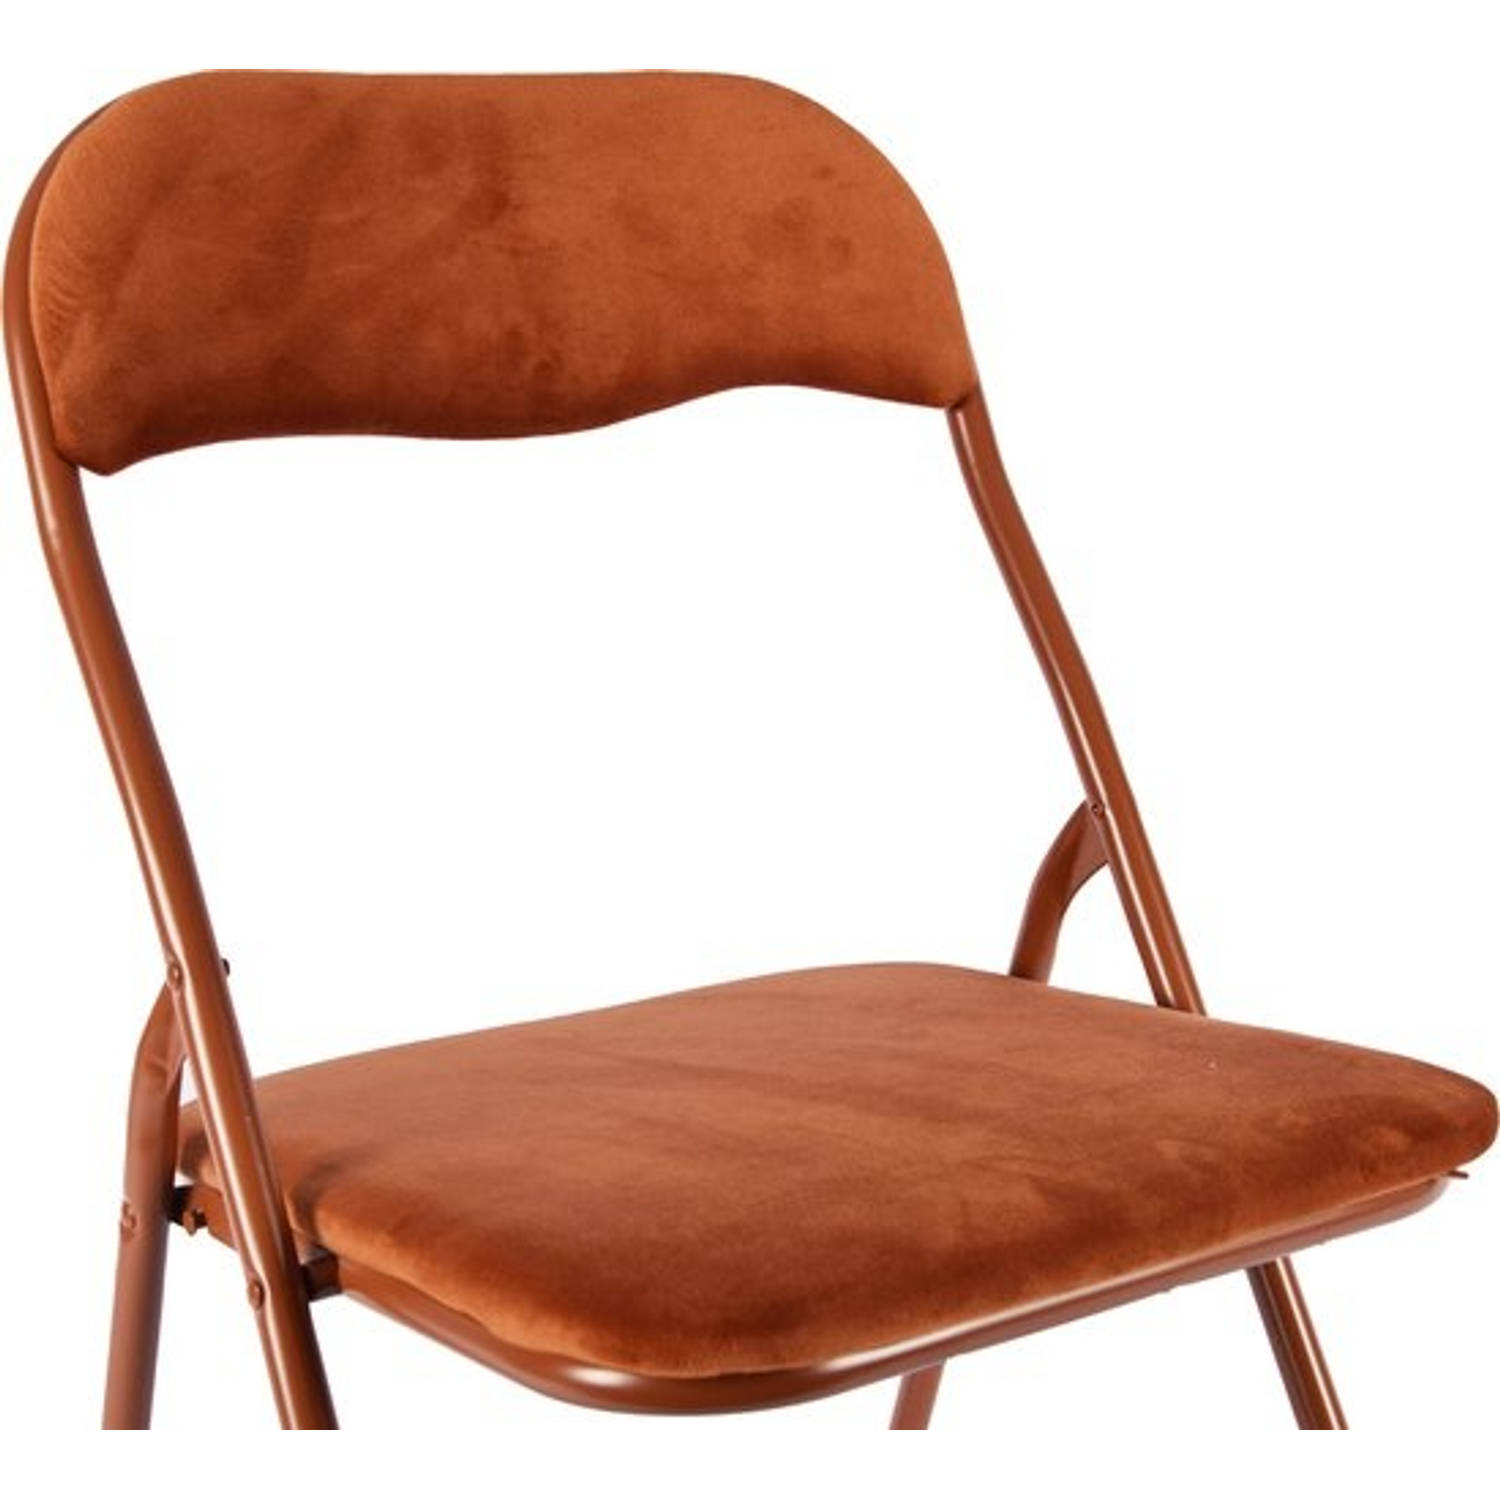 Klapstoel met zithoogte van 43 cml Vouwstoel velvet zitvlak en rug bekleed camel bruin